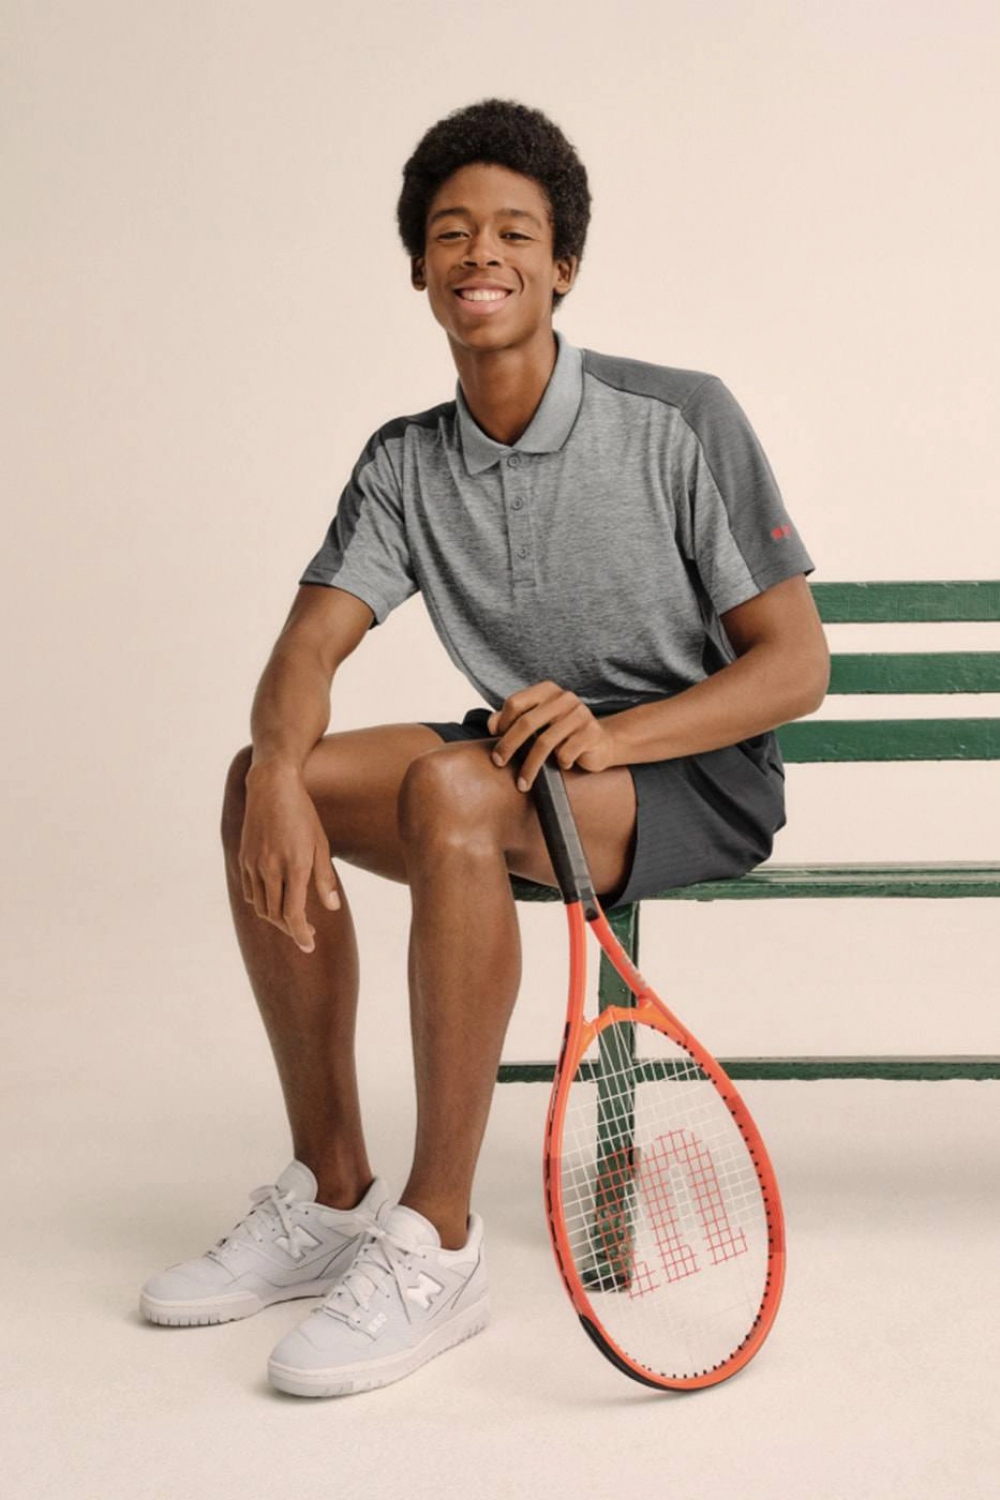 Bst thời trang lịch thiệp của huyền thoại quần vợt roger federer